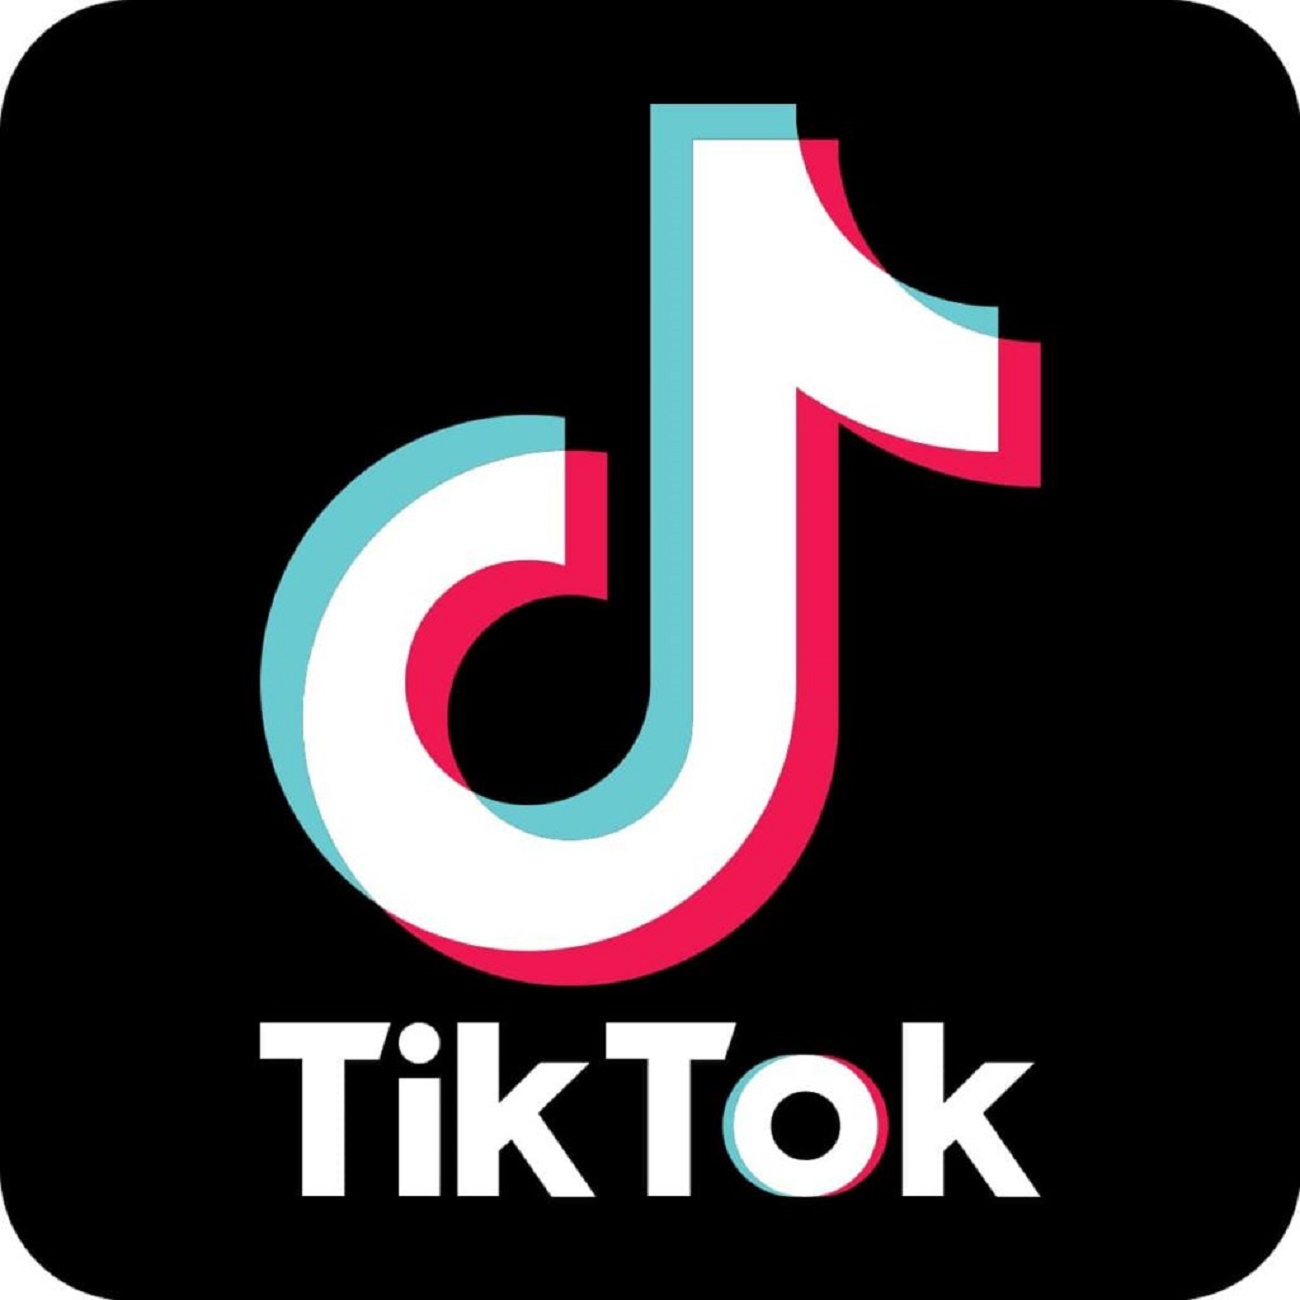 تطبيق Tik Tok يُسجل رقم قياسي جديد بعد تجاوزة 2 مليار عملية تحميل